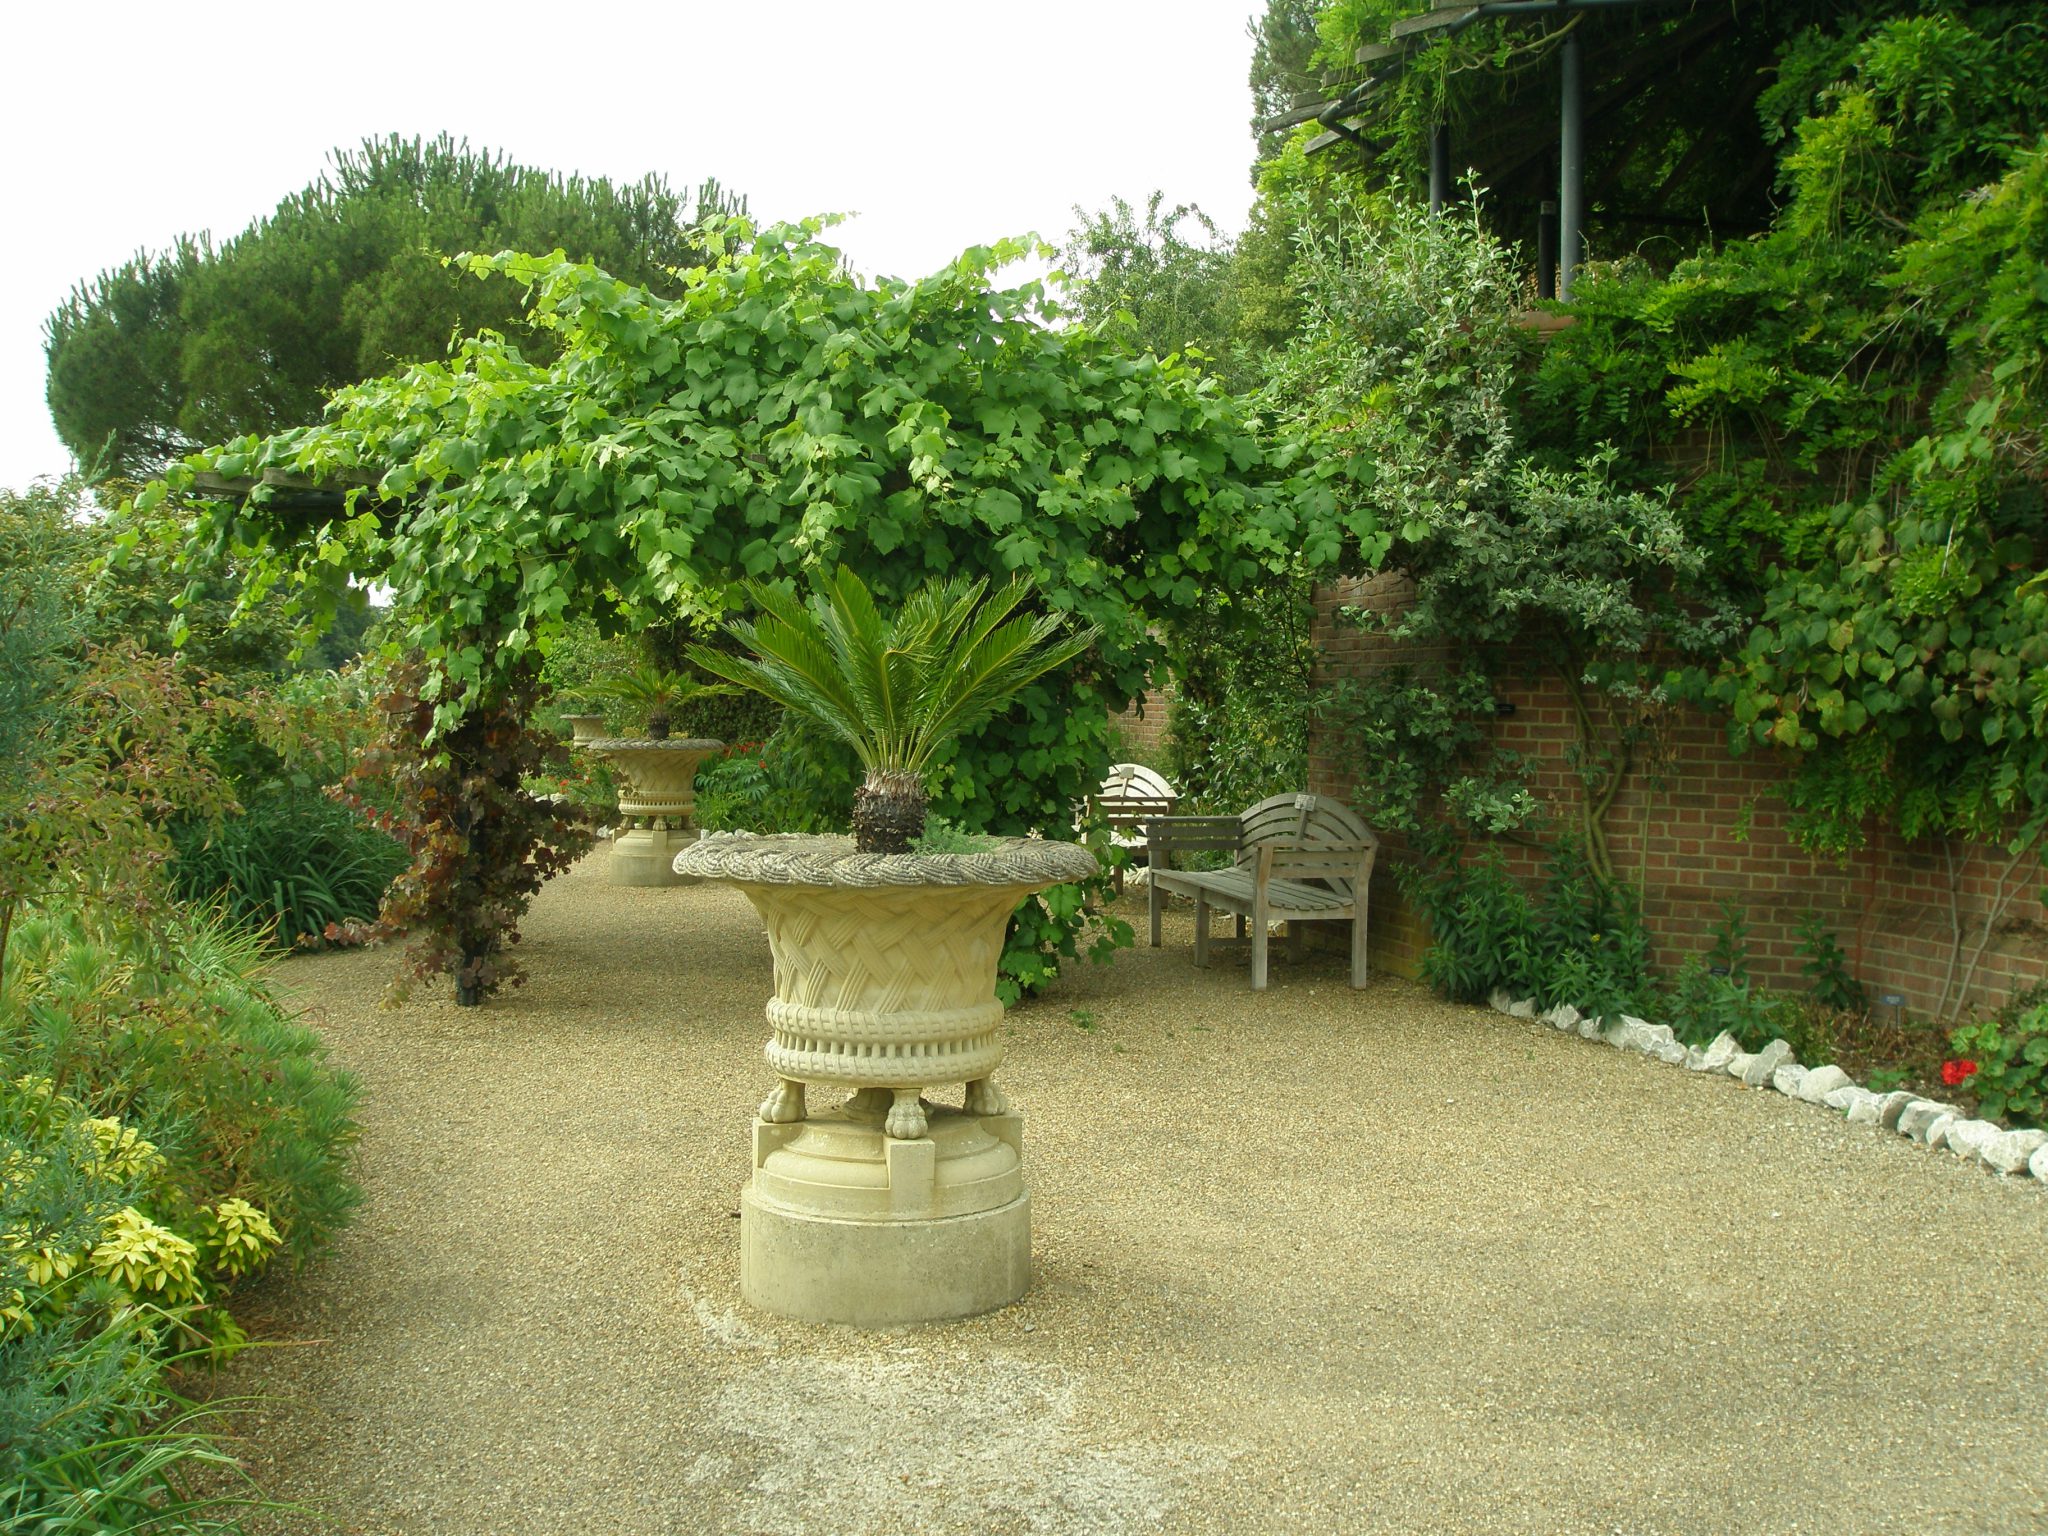 The Lady Baillie Garden